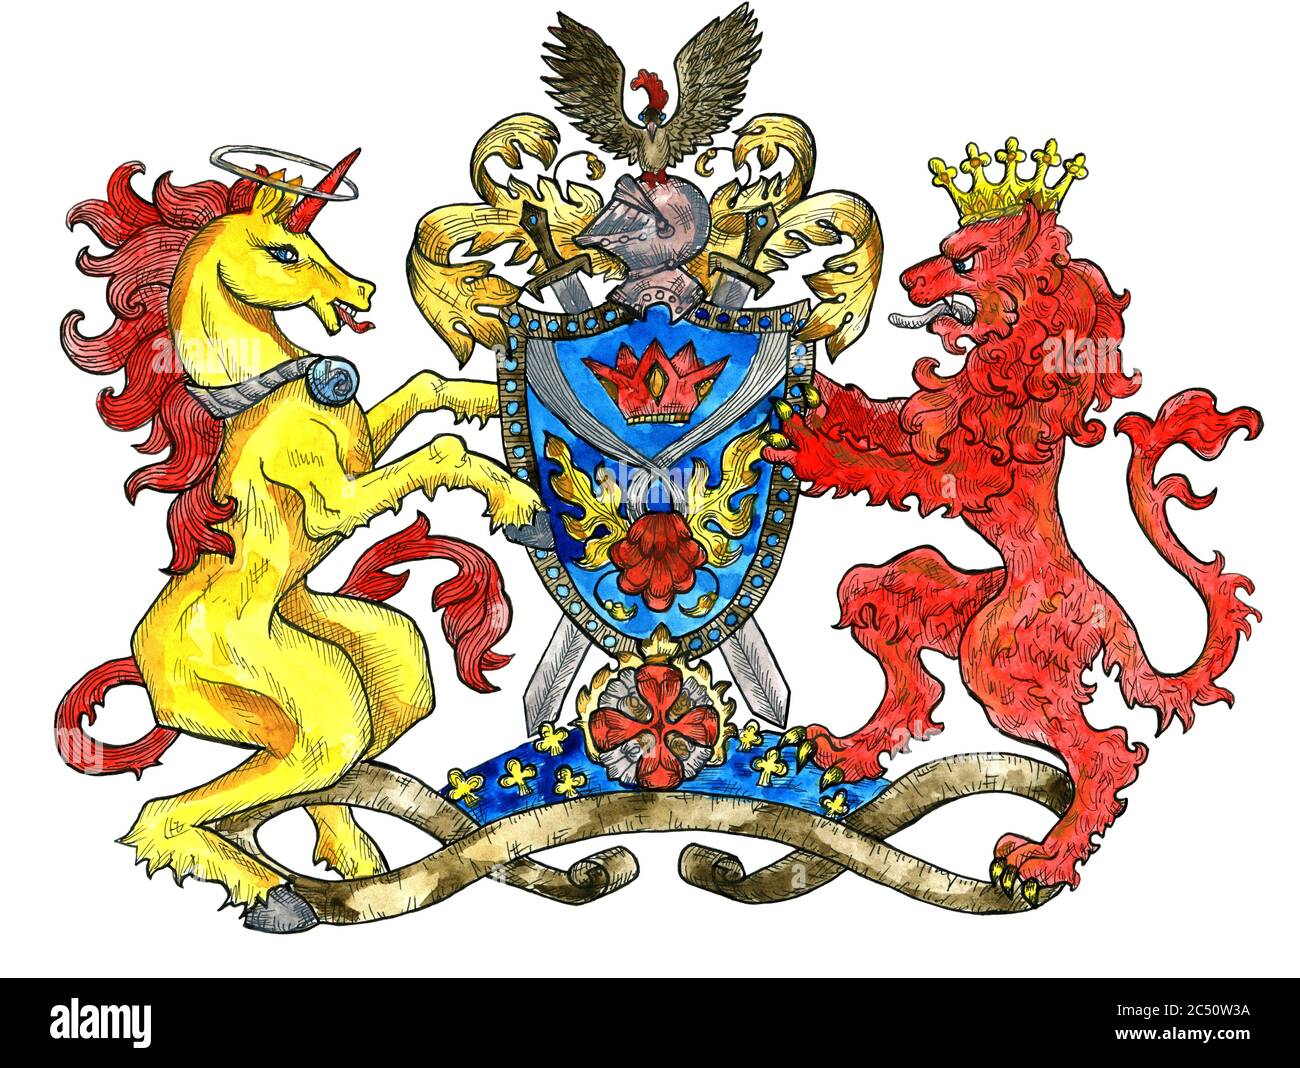 Emblème héraldique avec licorne et lion animal isolé sur blanc. Illustration gravée colorée avec des créatures mythologiques et fantasy dans le style ancien, mediae Banque D'Images